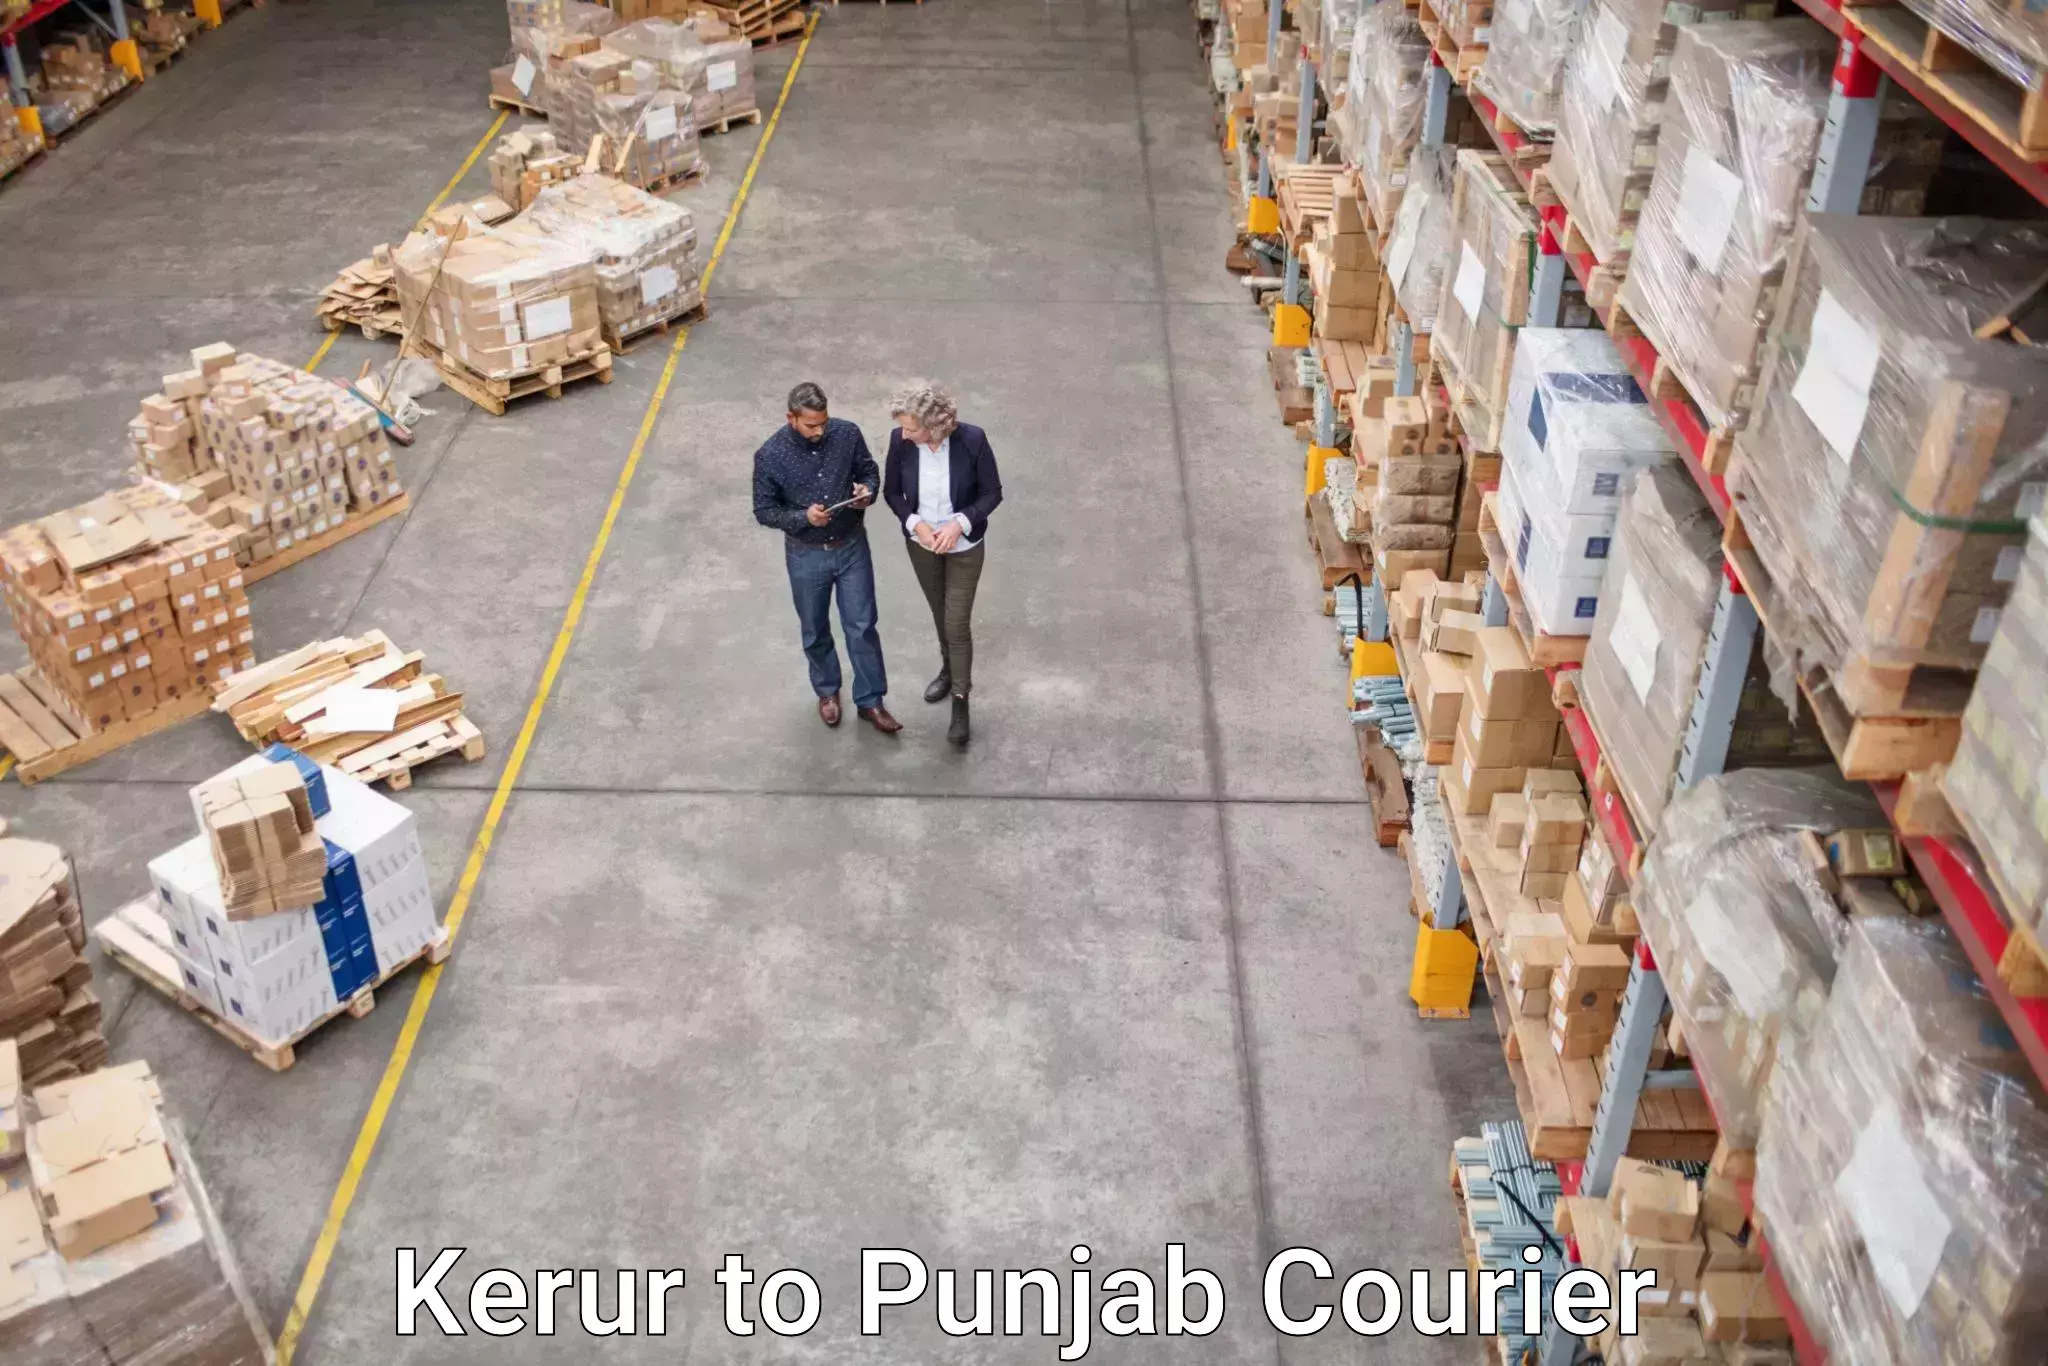 International parcel service Kerur to Punjab